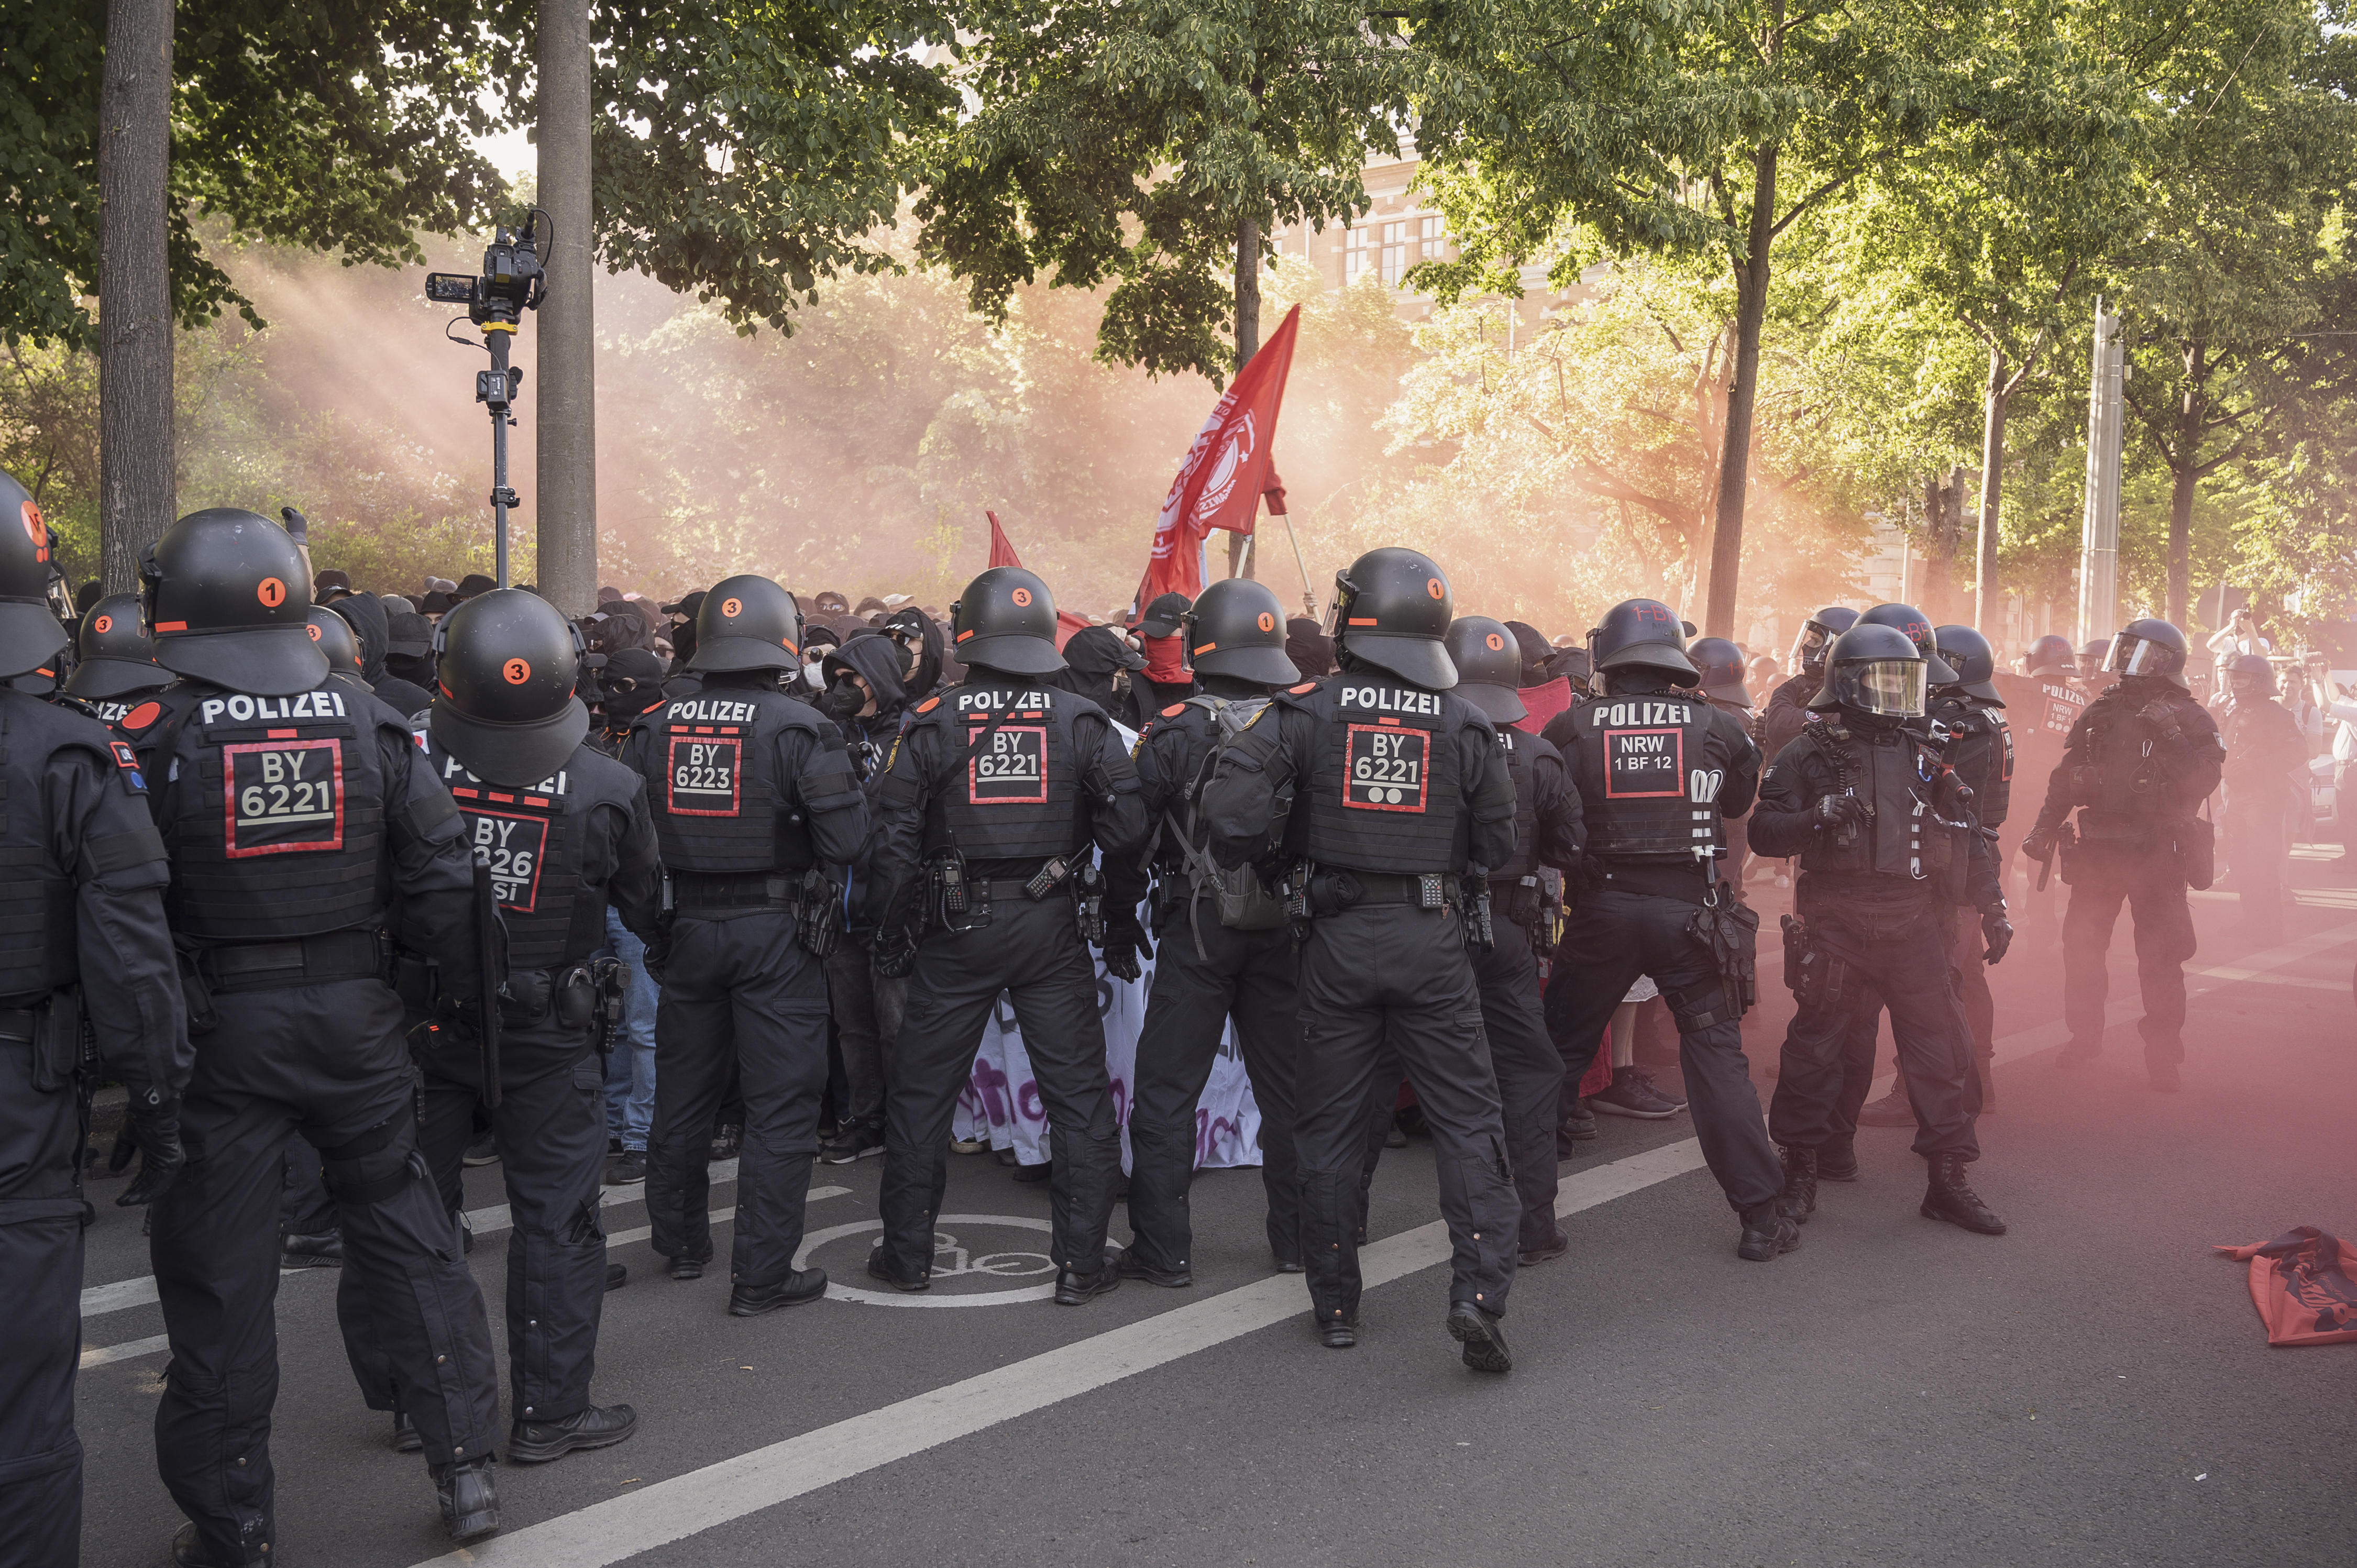   Leipzig, statt der Bürgerrechte | Nach dem Tag X in Leipzig wird das Vorgehen der Behörden scharf kritisiert  